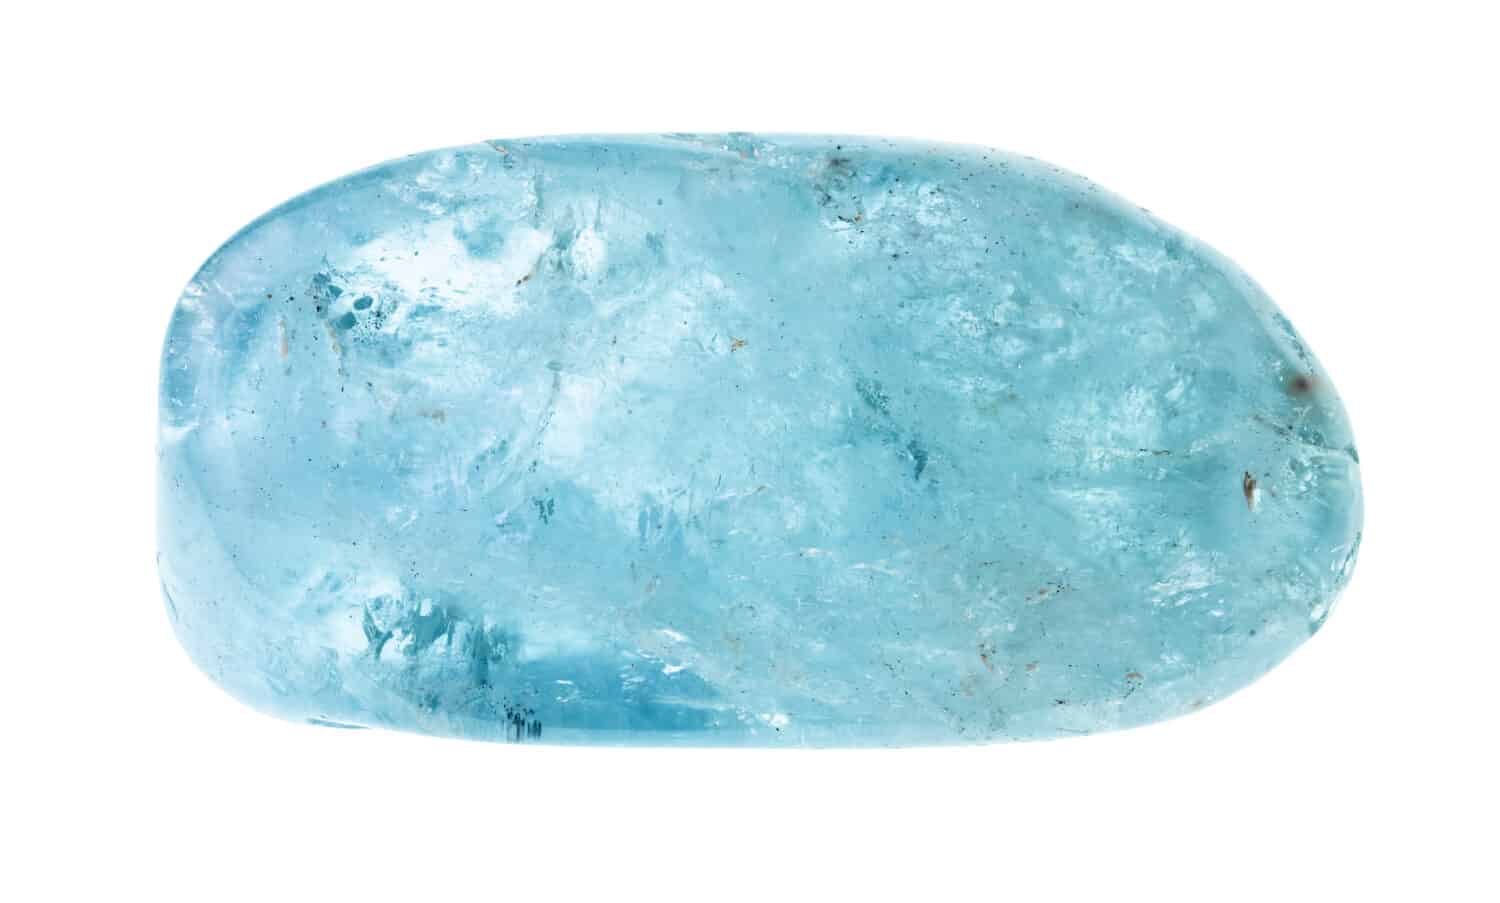 polished aquamarine (blue beryl) gemstone cutout on white background